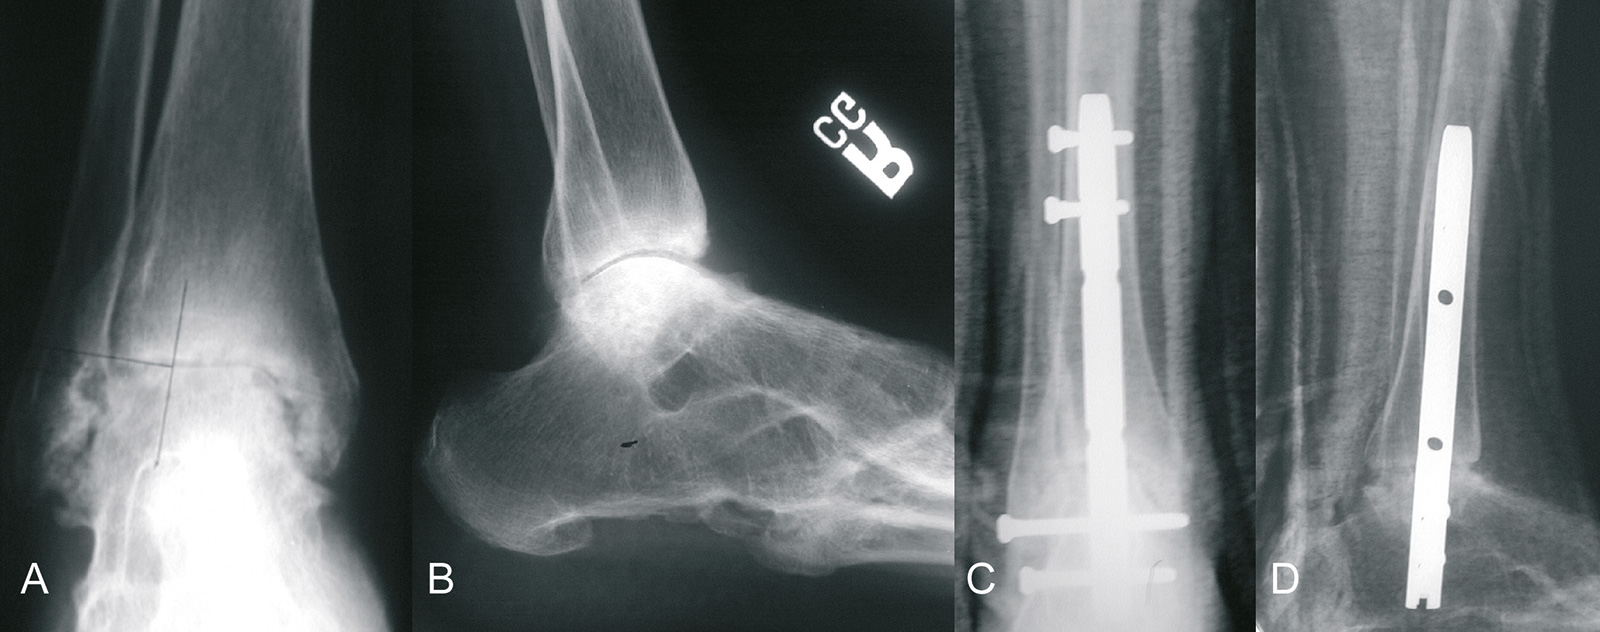 Abb. 1-73: Rheumatoide Arthritis des Sprunggelenks. Das untere Sprunggelenk und die Chopartgelenke sind bereits knöchern überbaut (A,B). Sprunggelenksarthrodese mit einem retrograden Nagel (C,D)